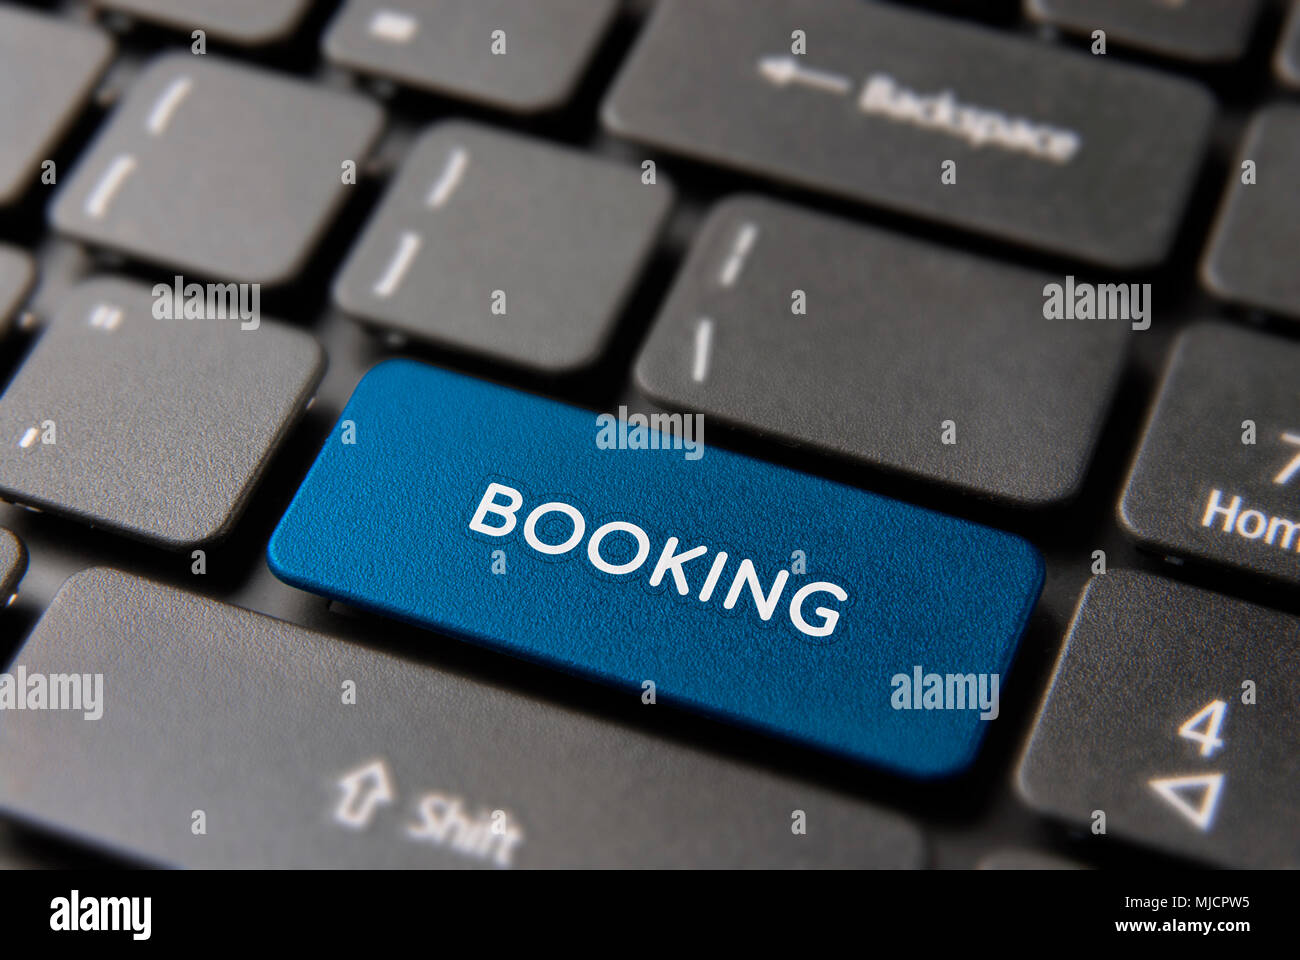 Business buchung Taste für online Urlaub buchung Konzept. Buchen Hotel Icon in blauer Farbe. Stockfoto